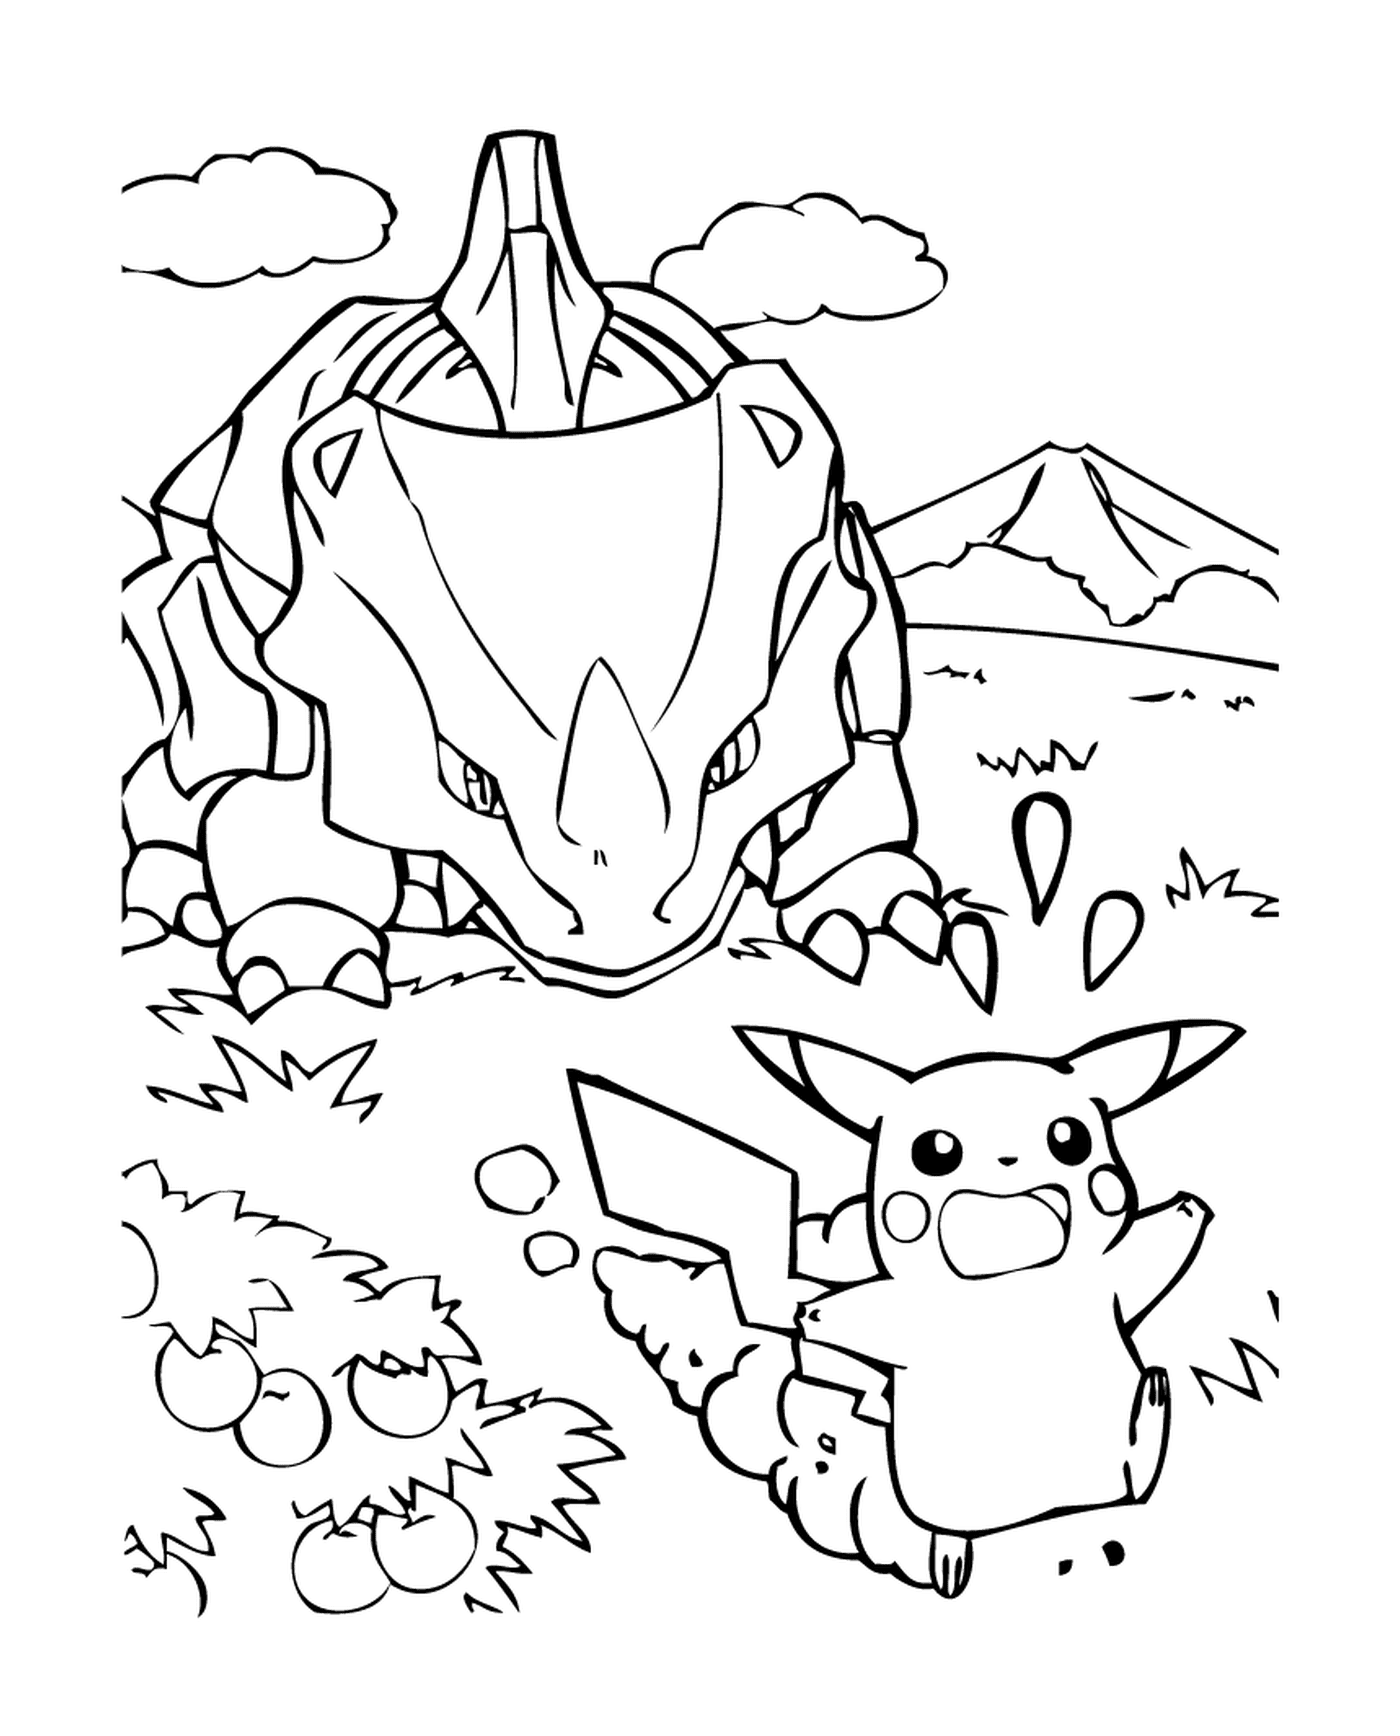   Pikachu et un dragon se rencontrent 